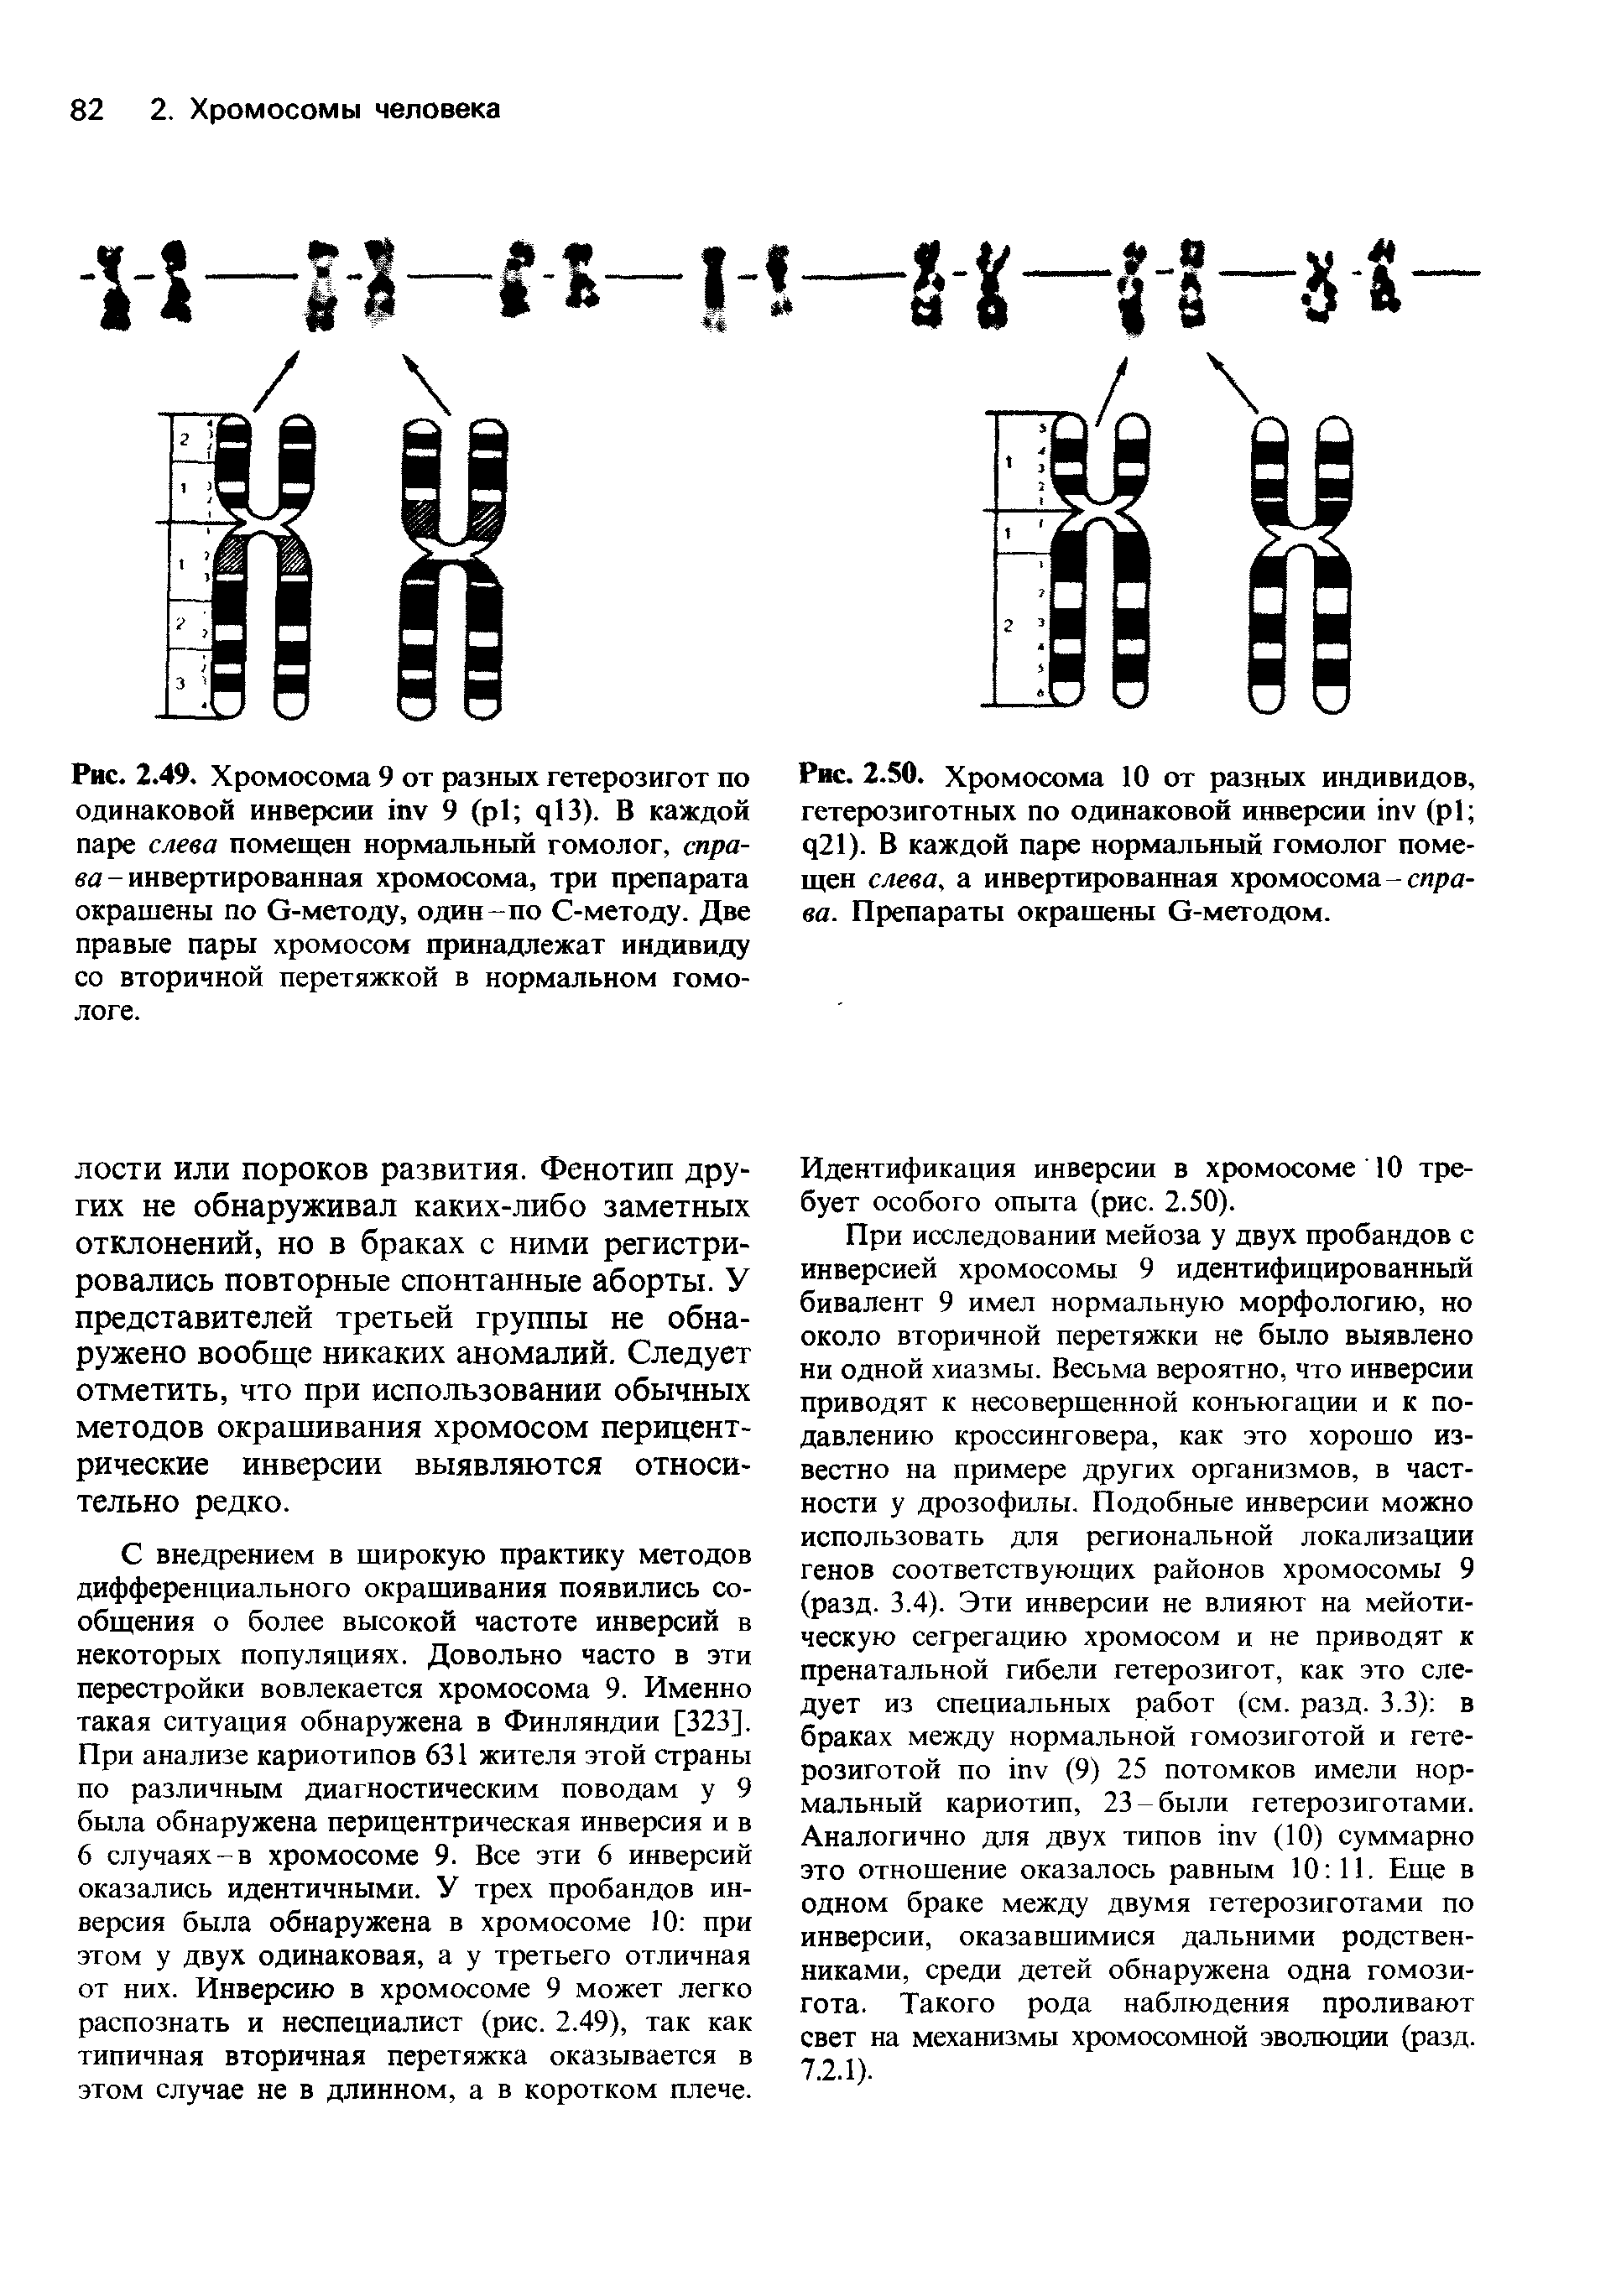 Рис. 2.50. Хромосома 10 от разных индивидов, гетерозиготных по одинаковой инверсии пу (р1 ц21). В каждой паре нормальный гомолог помещен слева, а инвертированная хромосома-справа. Препараты окрашены О-методом.